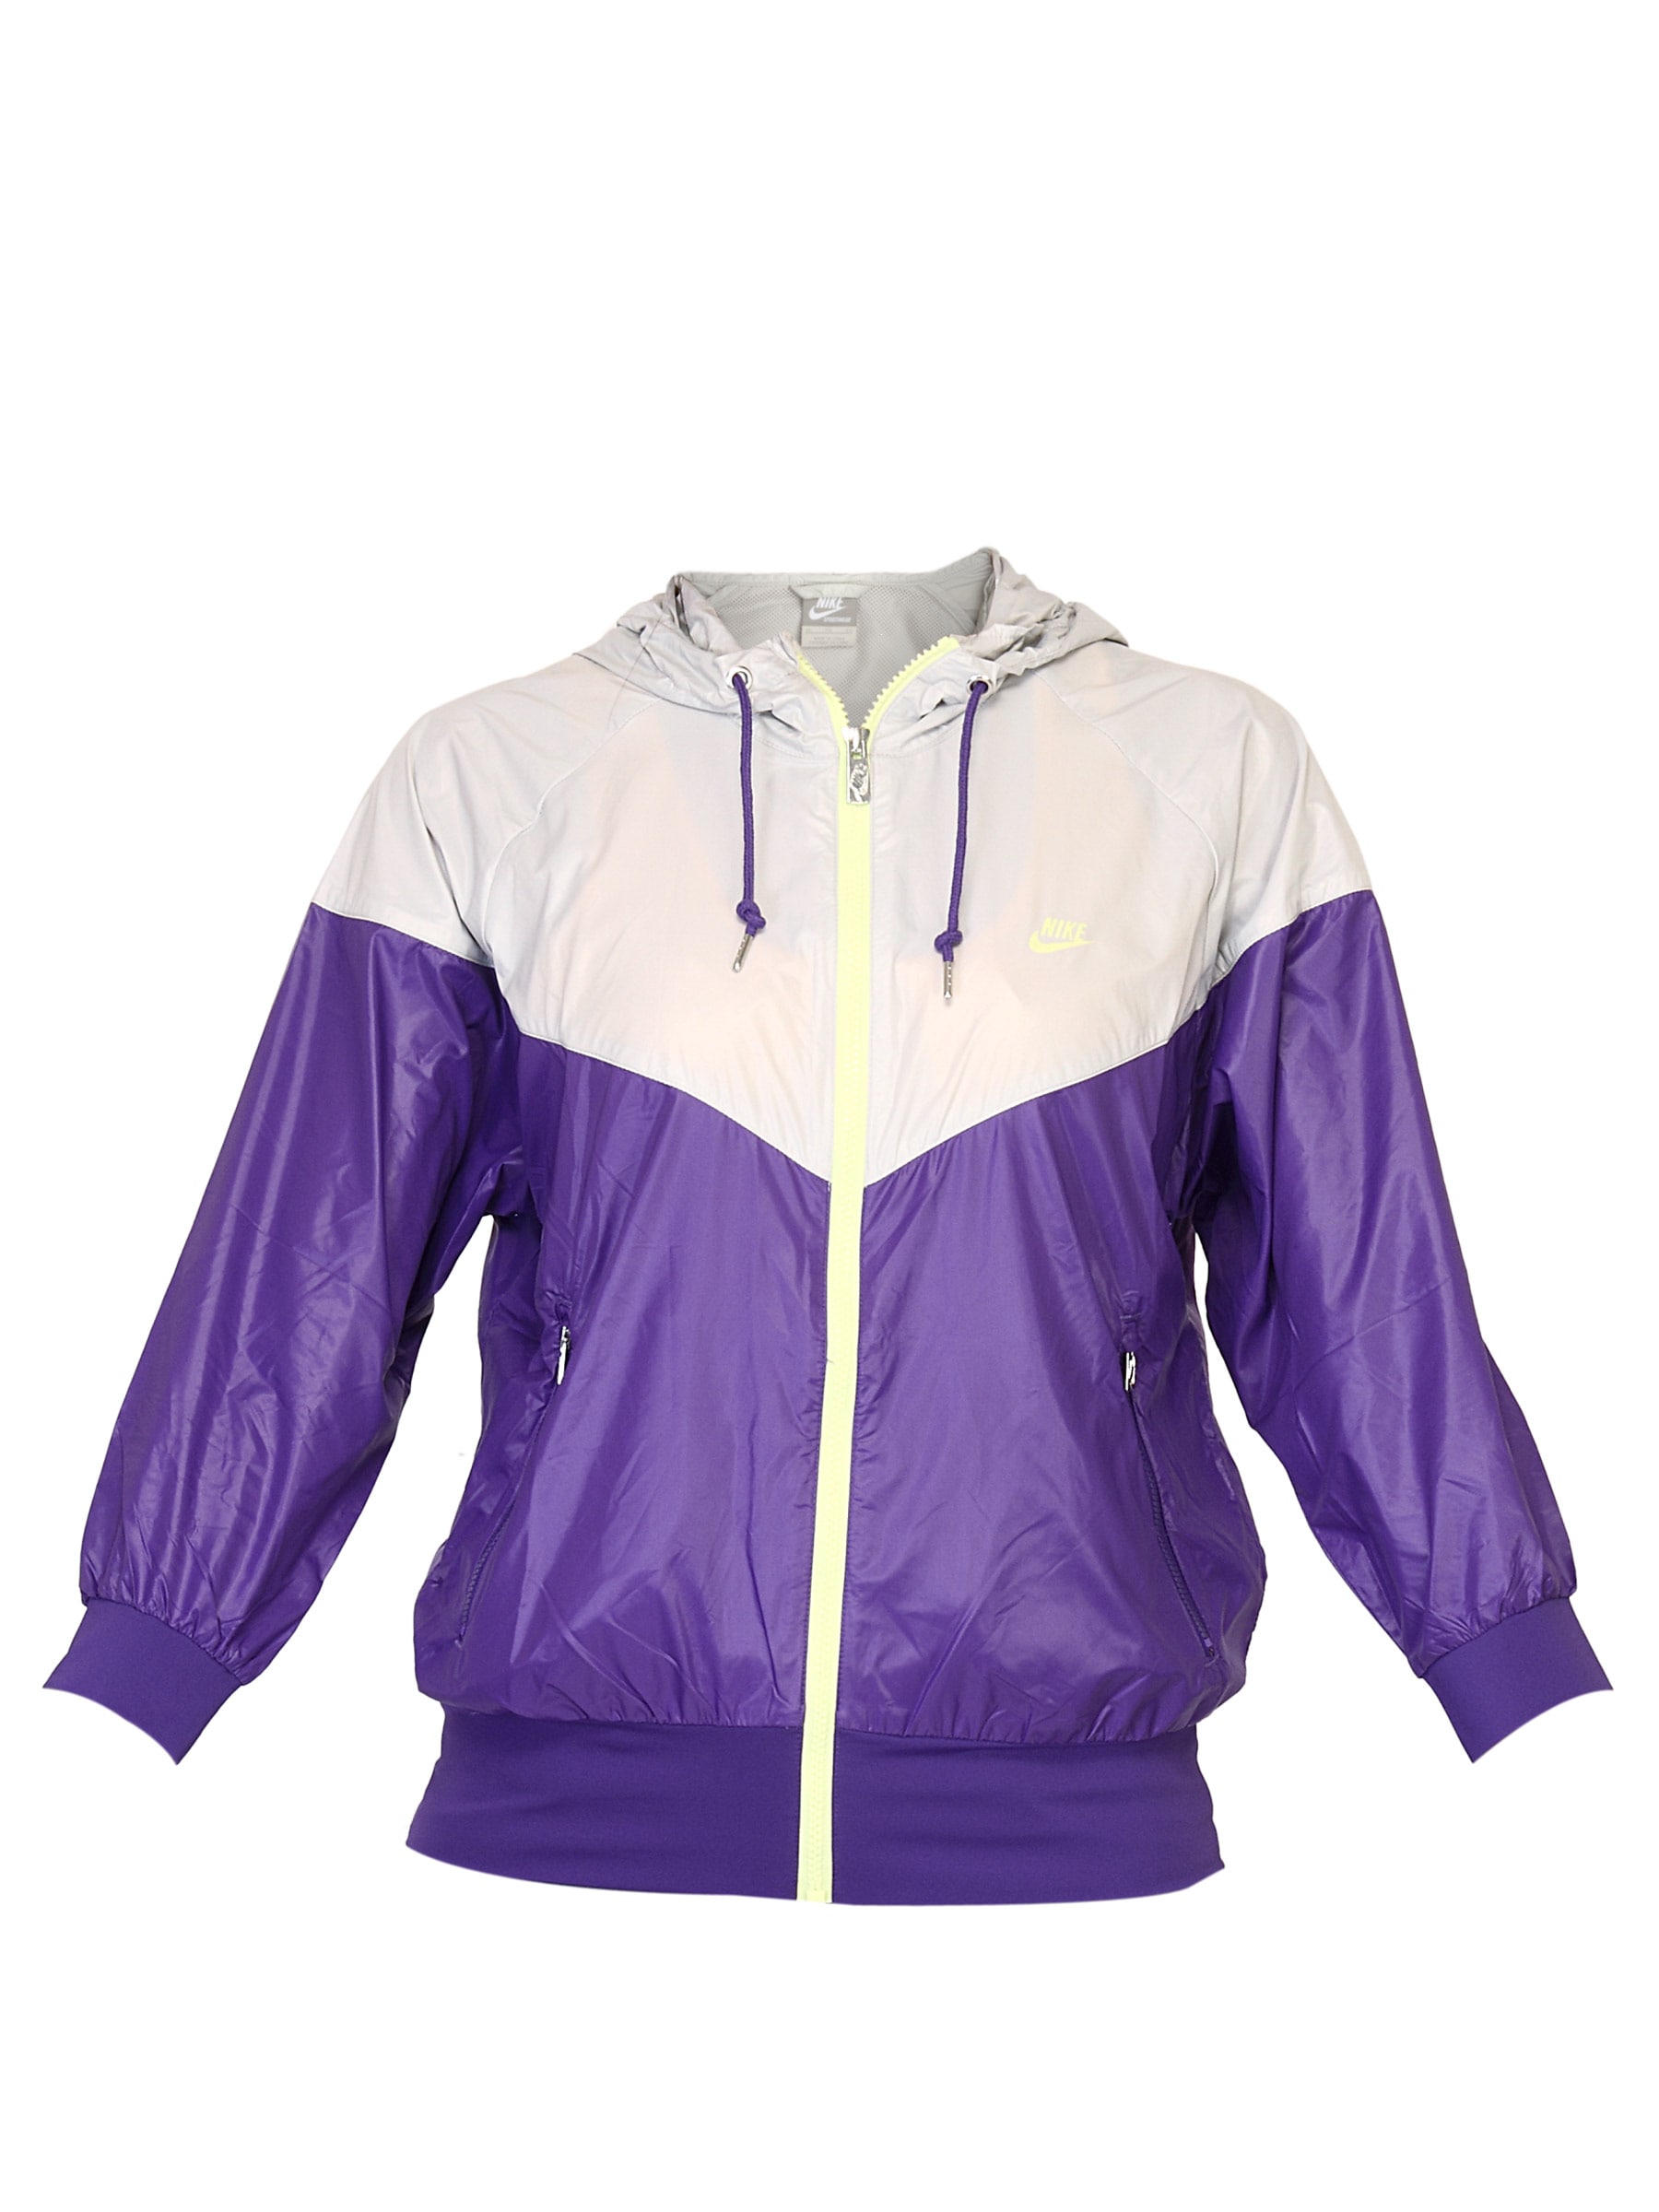 Nike Women Hooded Purple Jacket